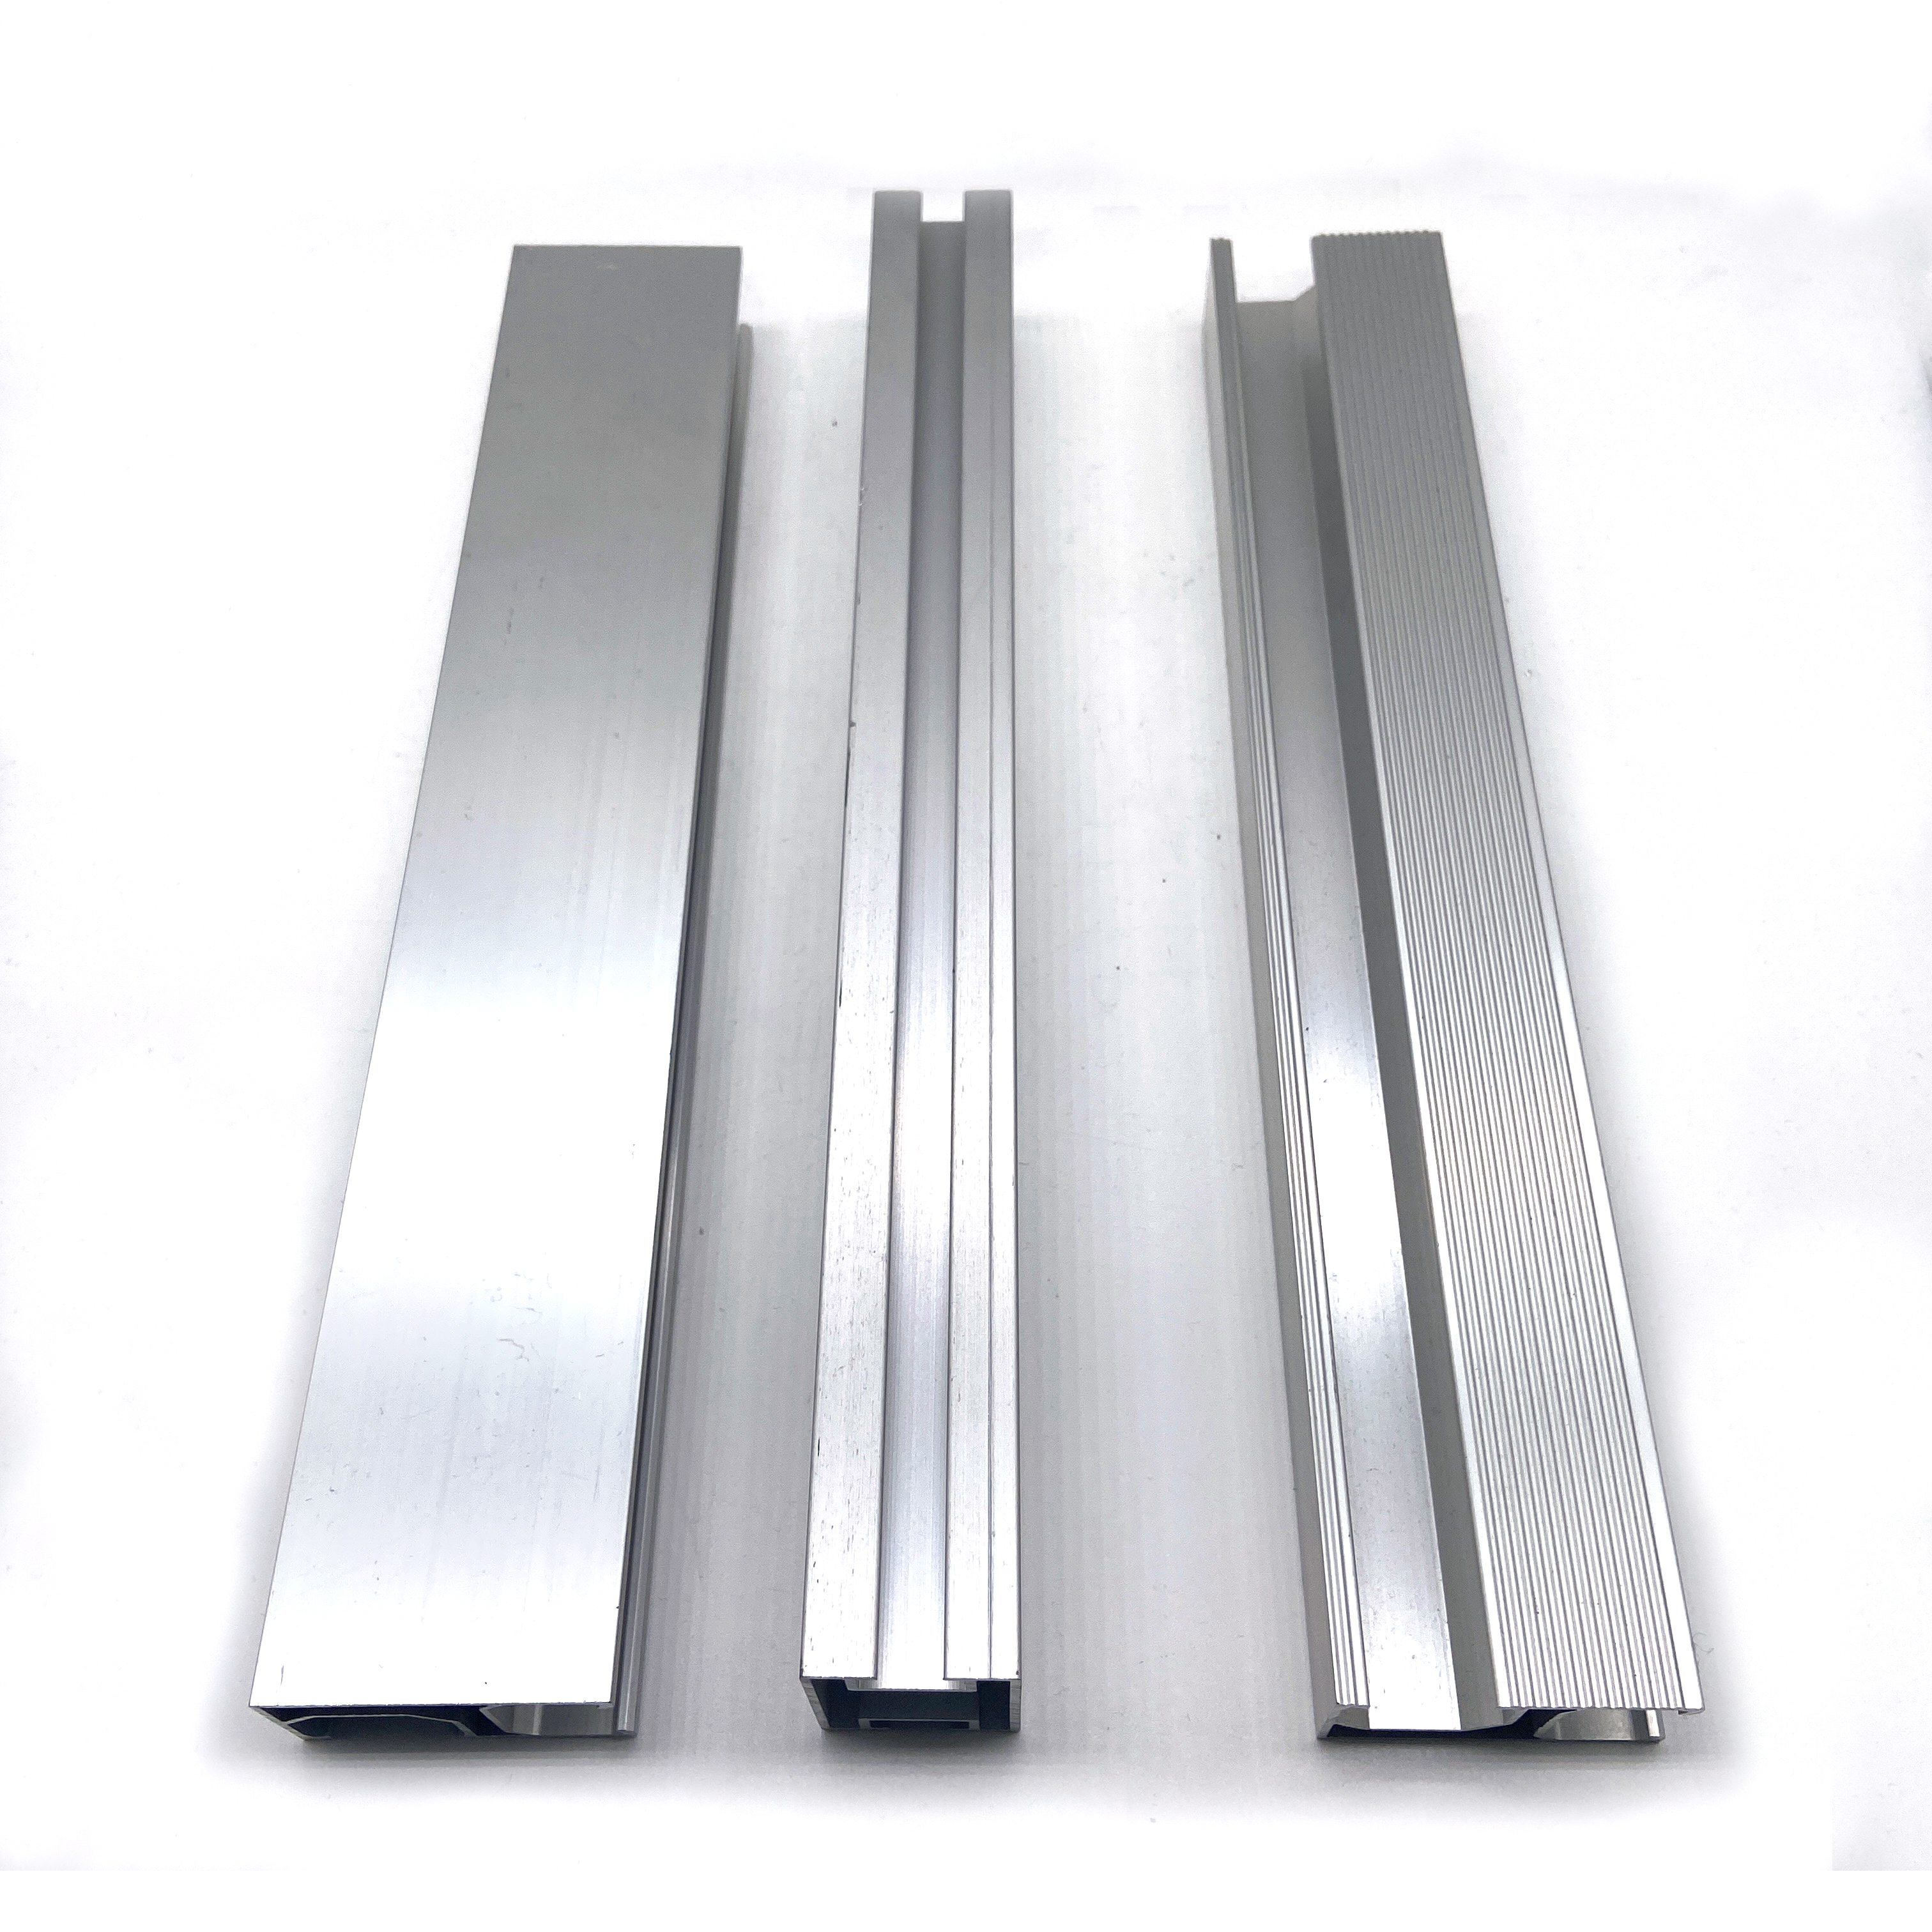 Supports de panneau solaire Extrusion en aluminium 6063 T5 Frames de panneaux solaires Profils en aluminium